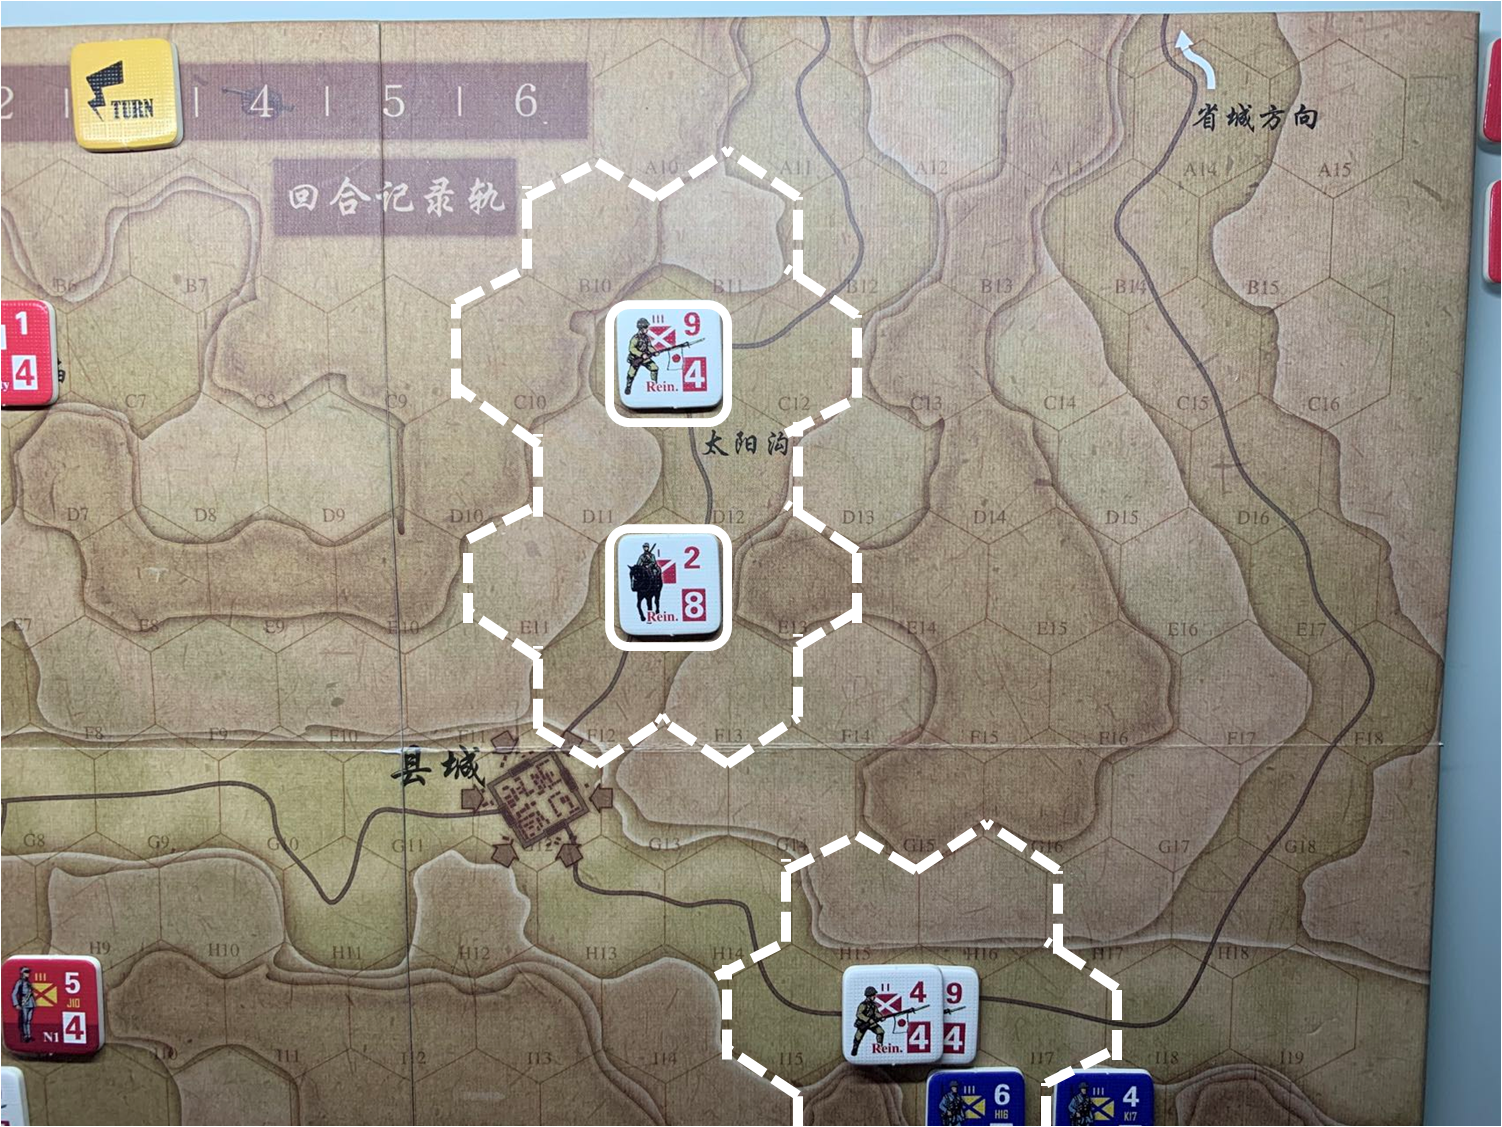 第三回合省城方向日军增援部队（C11、E12）对于移动命令3的执行结果，及两方向日军增援部队控制区覆盖范围